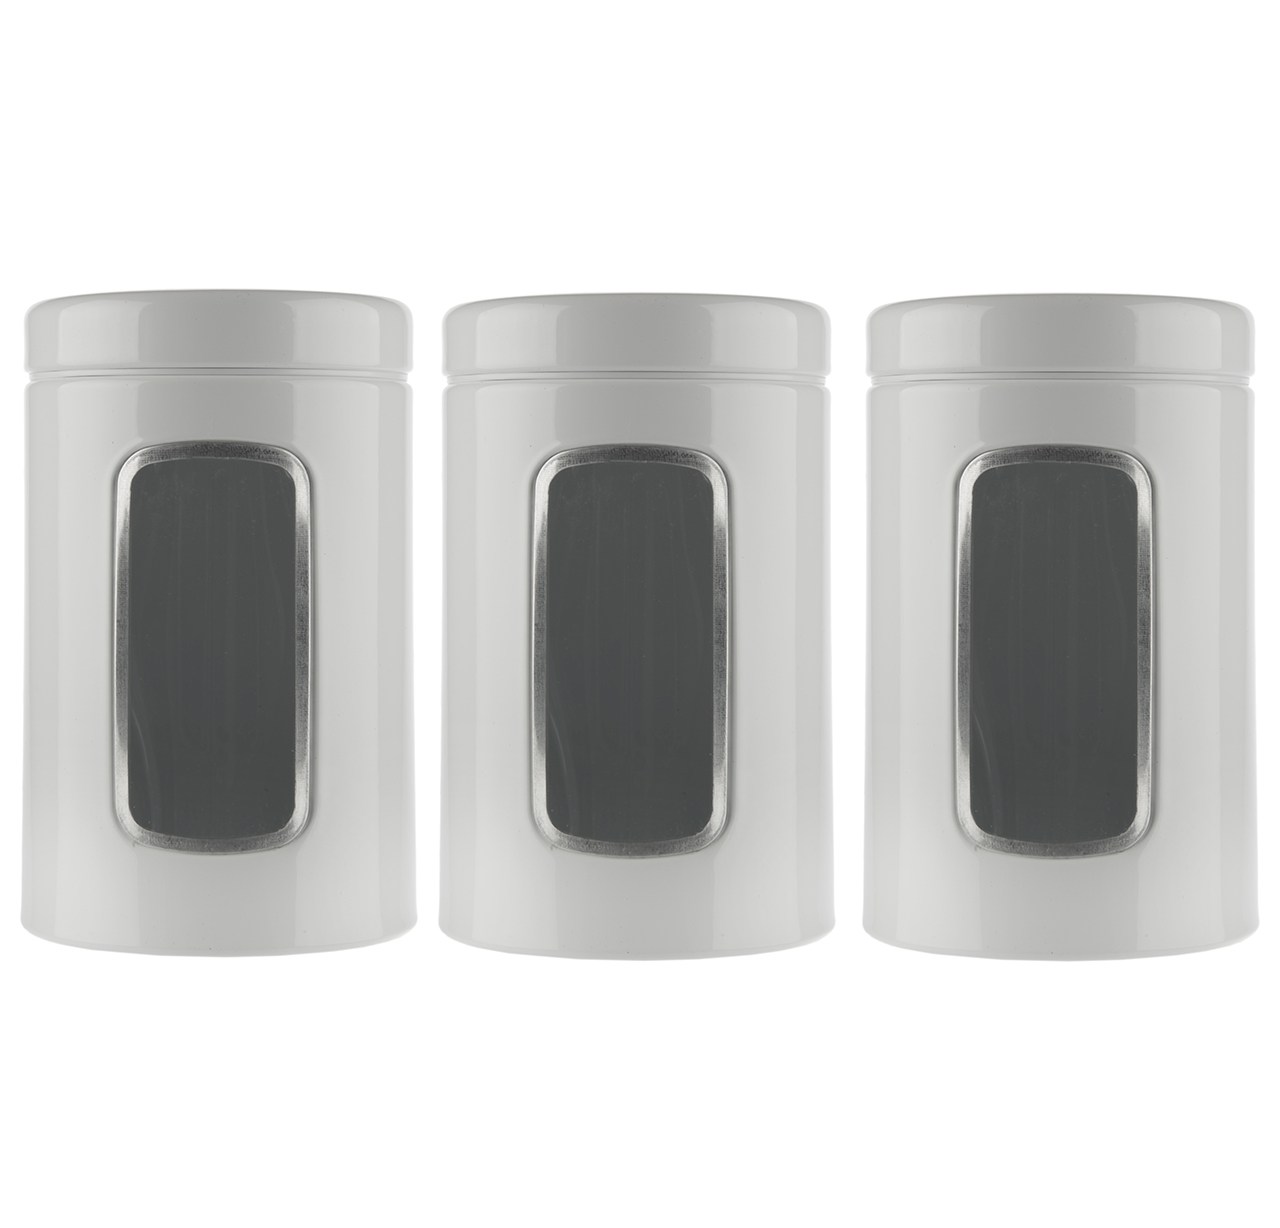 ست ظرف نگهدارنده چای اورانوس مدل UTS-410 طرح ساده